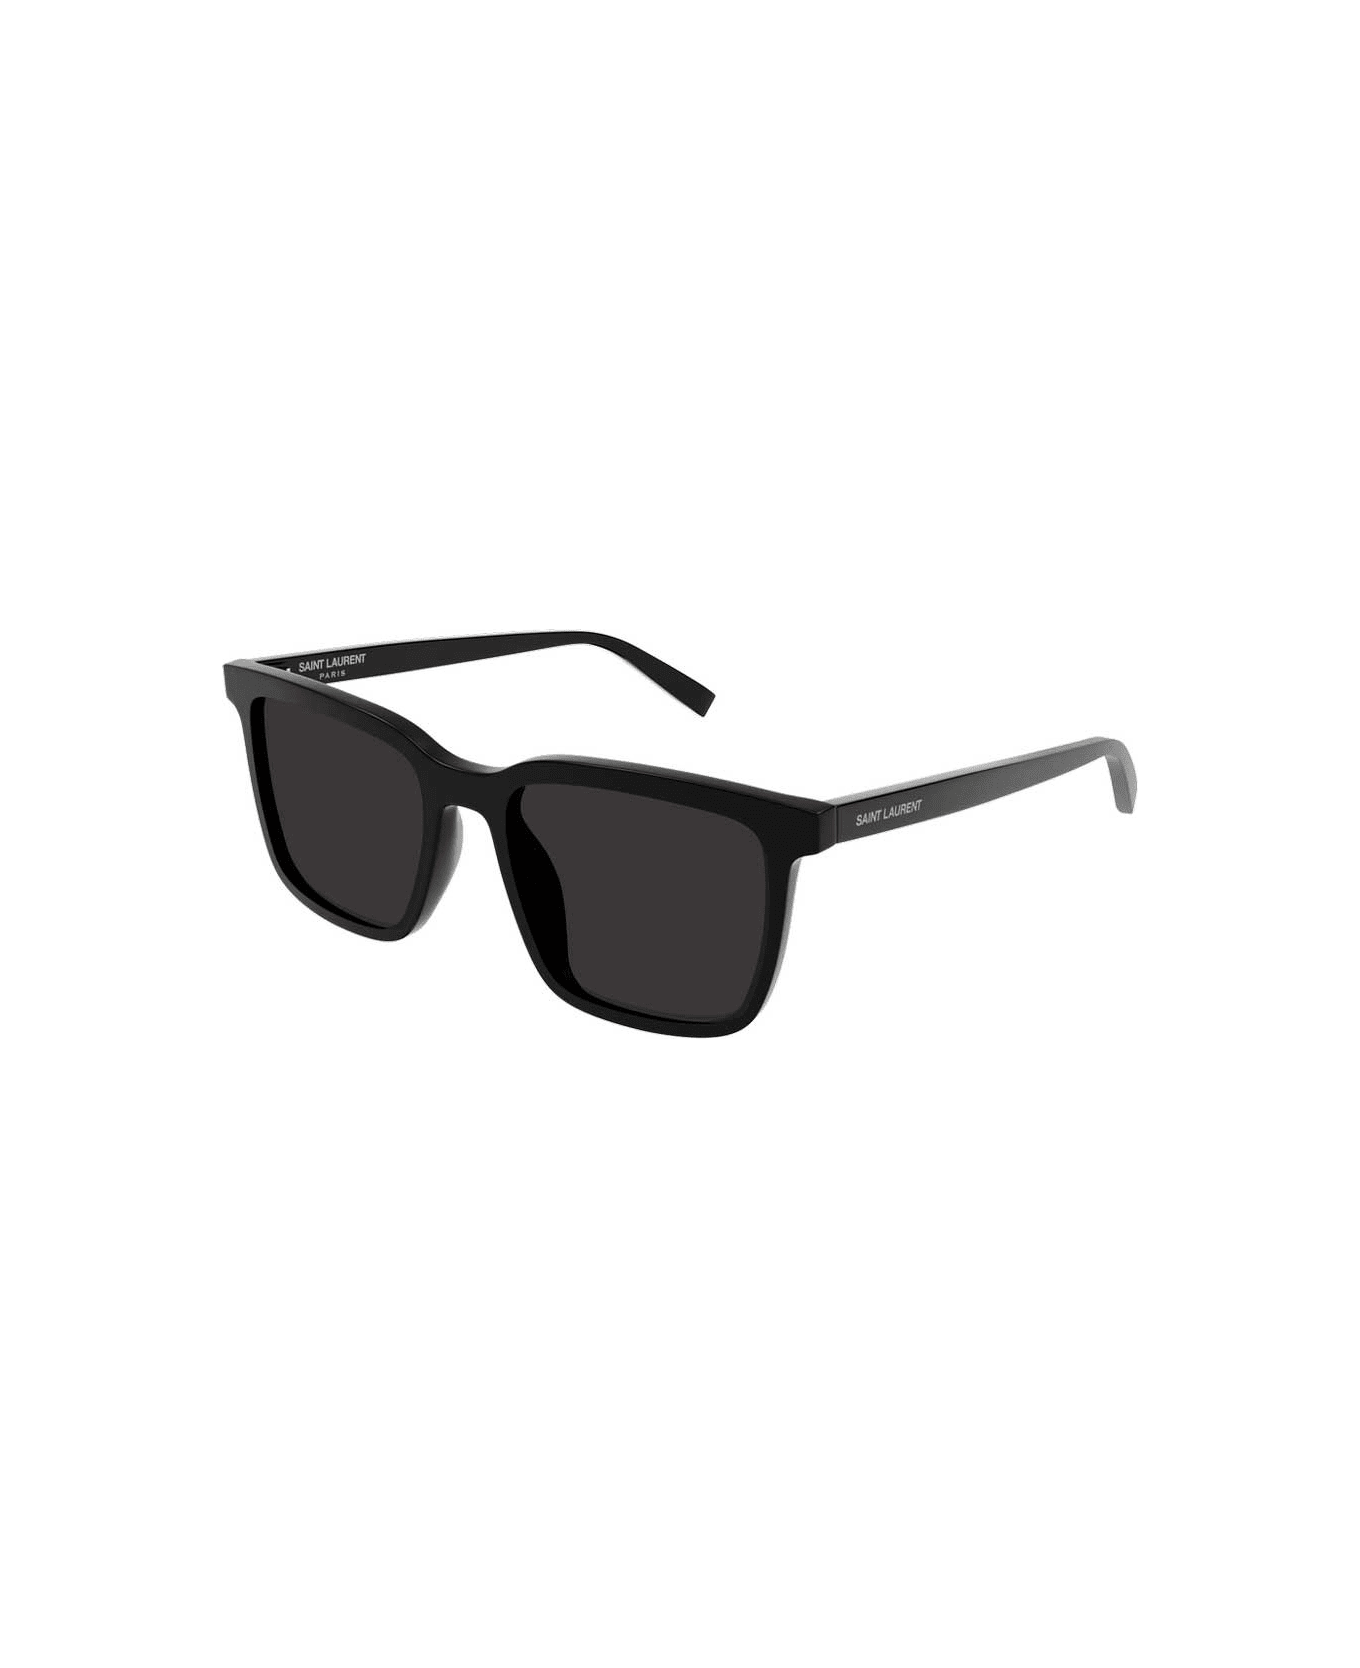 Saint Laurent Eyewear Sunglasses - Nero/Nero